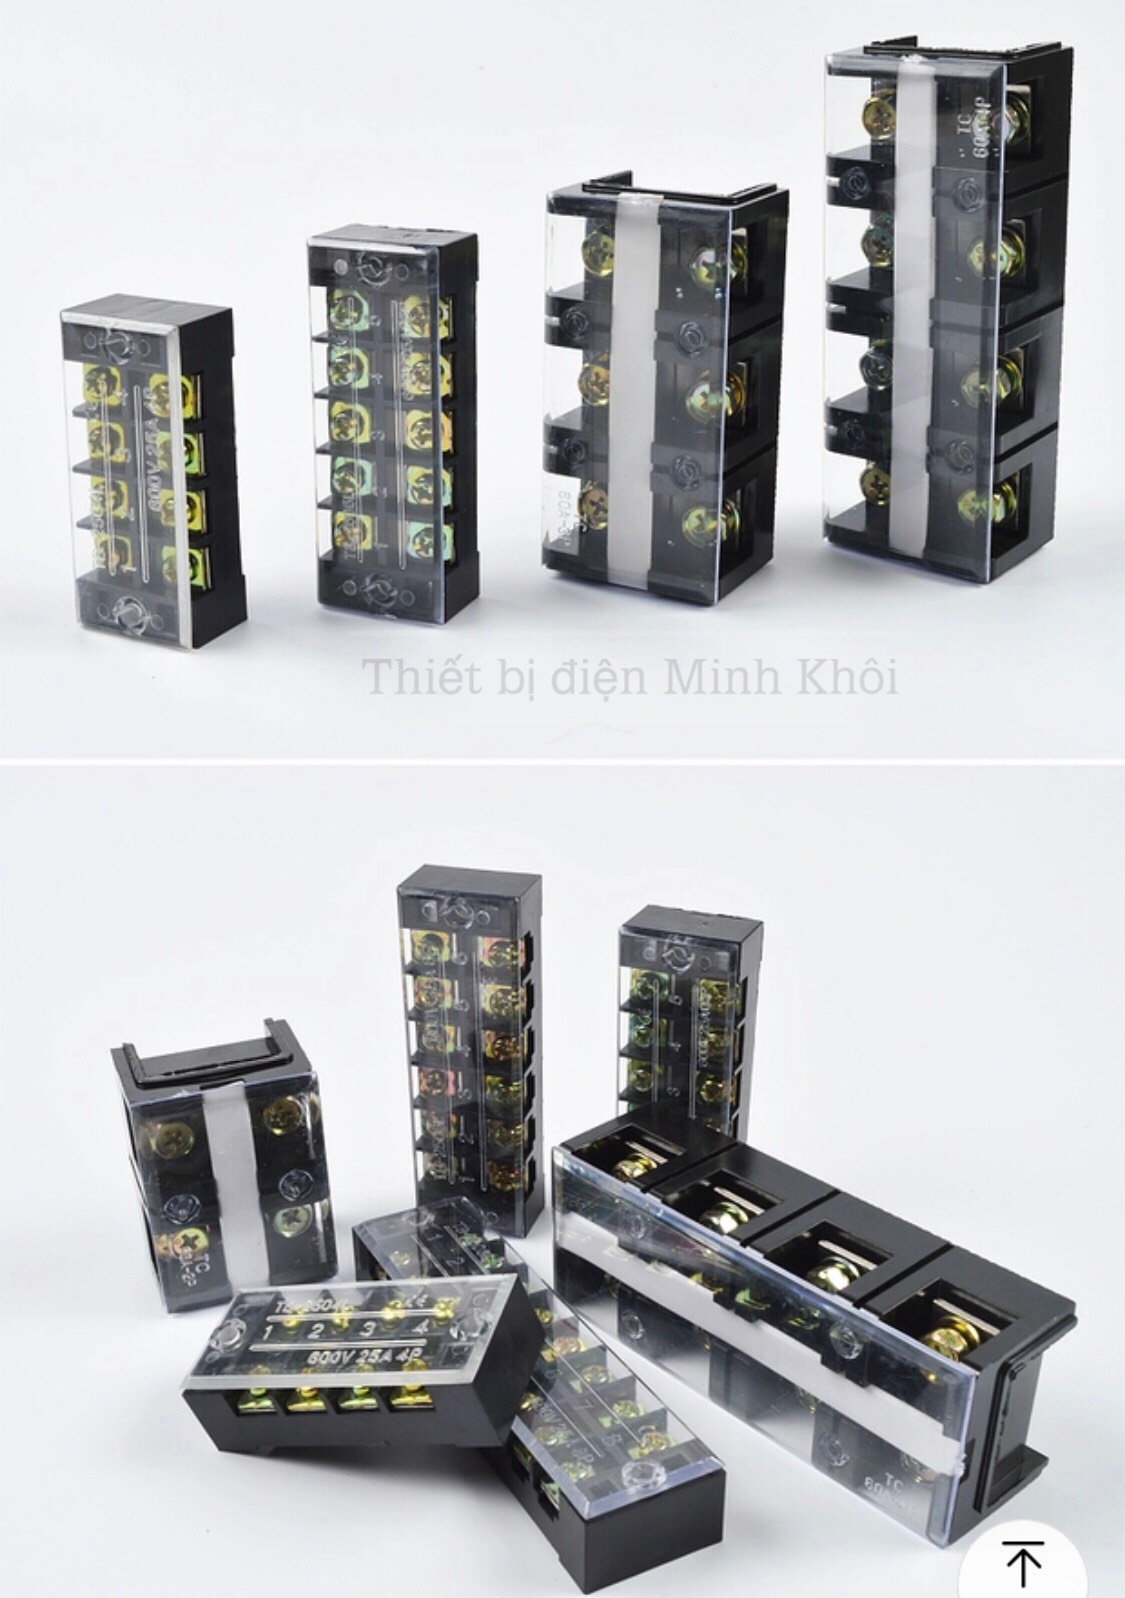 [Mẫu mới] cầu đấu điện domino đủ kích thước cầu đấu dây điện cầu đấu terminal block cầu đấu điện cầu đấu dây cầu đấu chia dây điện cầu đấu domino cầu đấu điện domino domino cầu nối dây điện